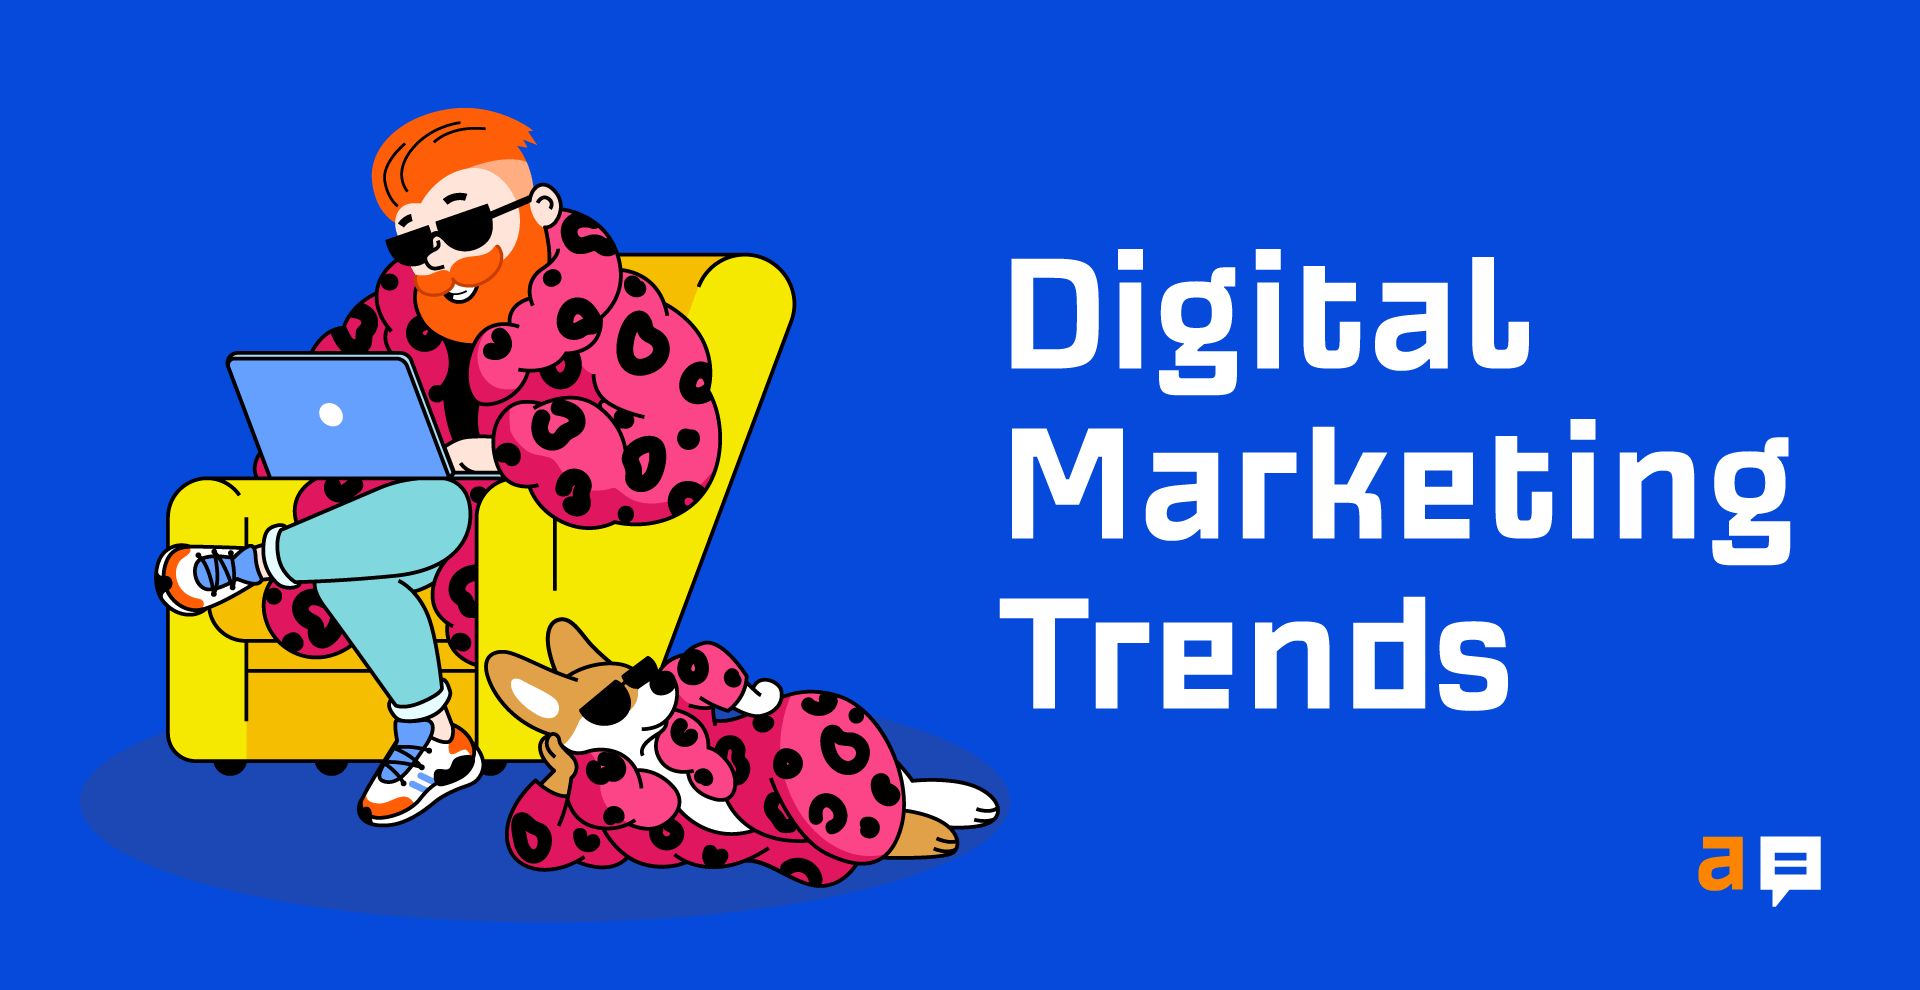 fb_digital_marketing_trends_navigation.png